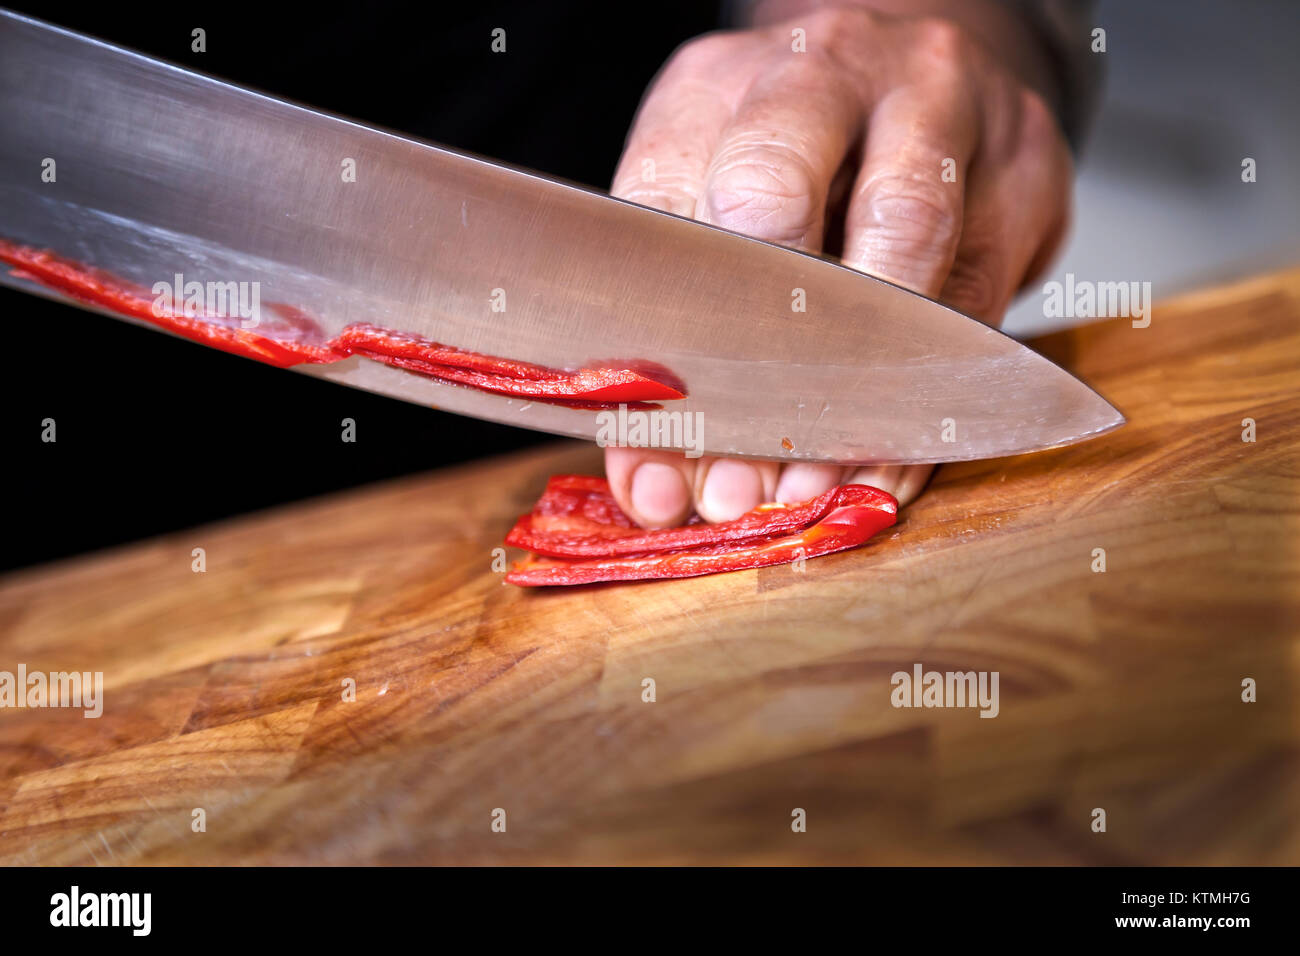 La préparation des aliments - grosse red chili sur planche à découper Banque D'Images